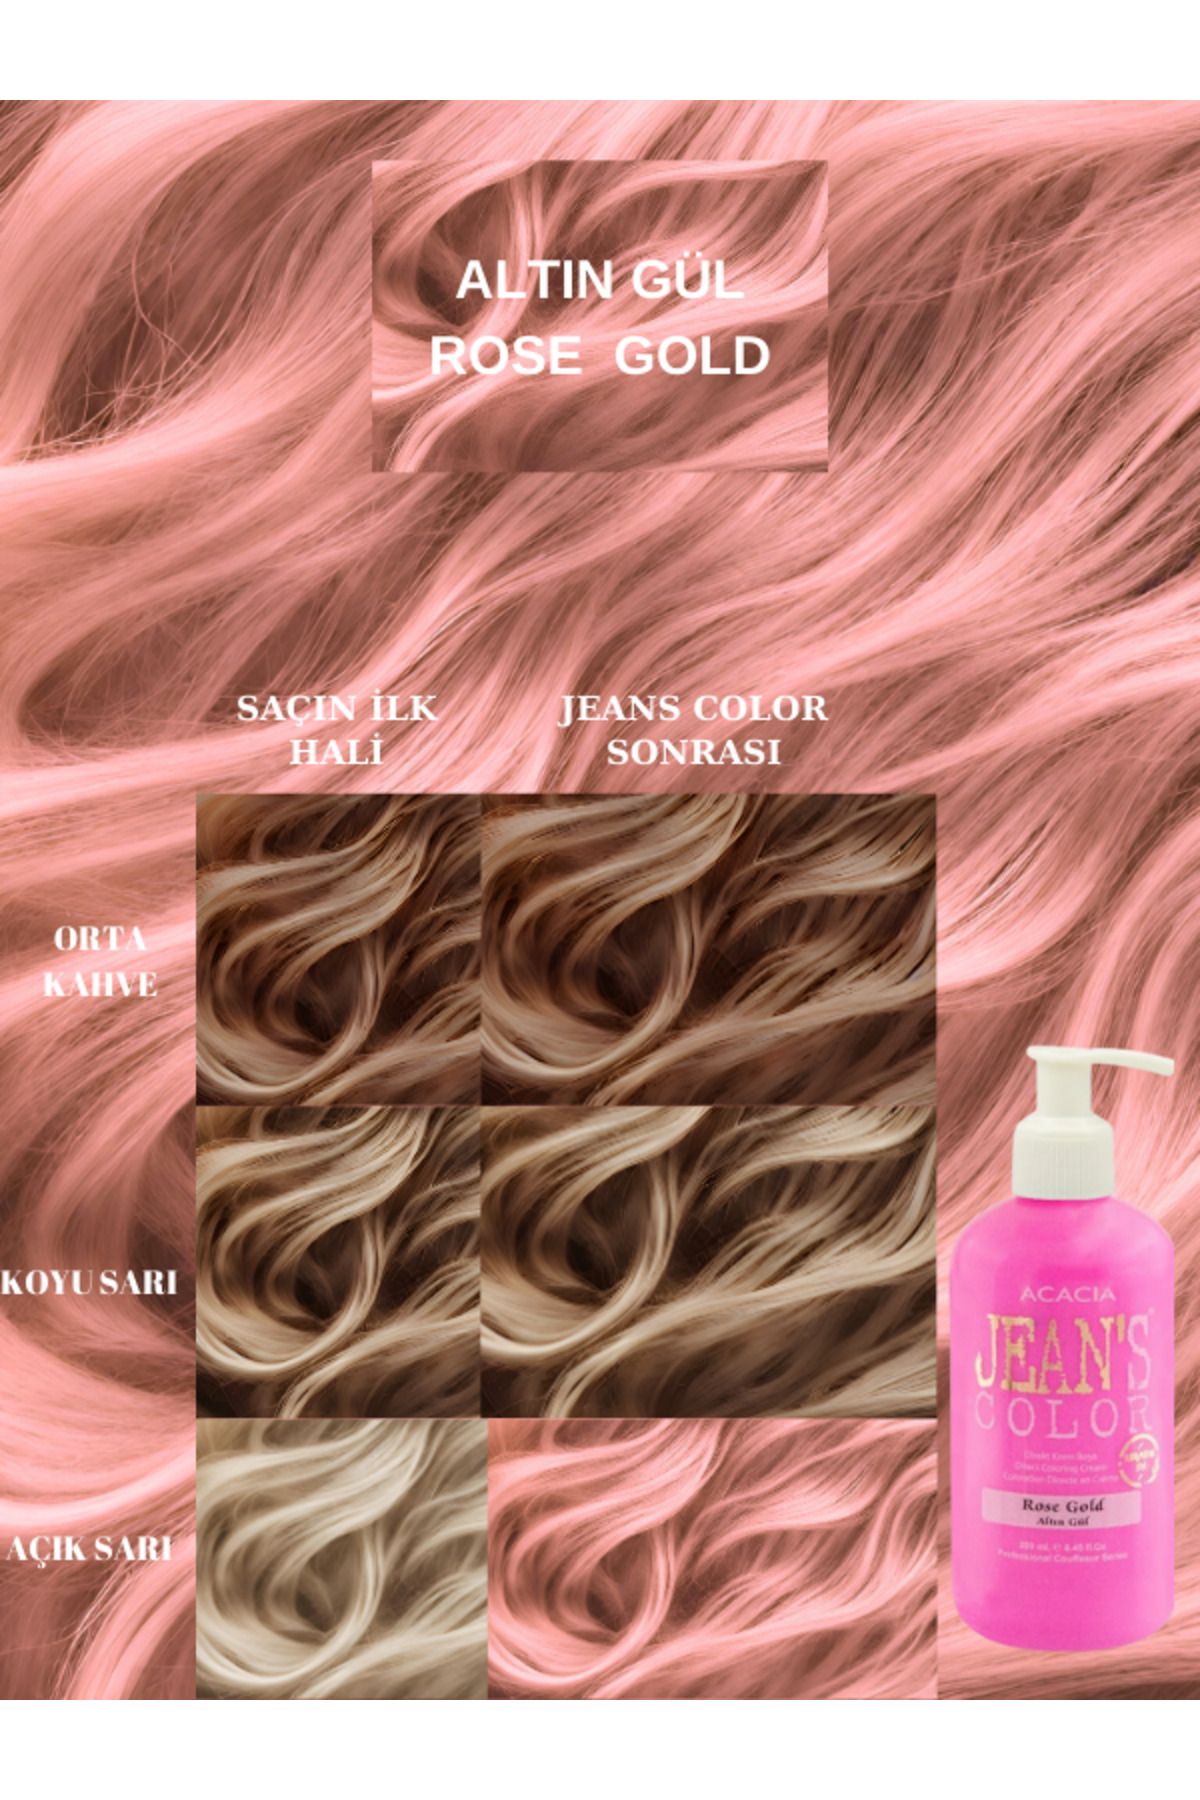 Acacia Jean's Color Altın Gül 250 Ml. Rose Gold Pastel Amonyaksız Balyaj Renkli Saç Boyası